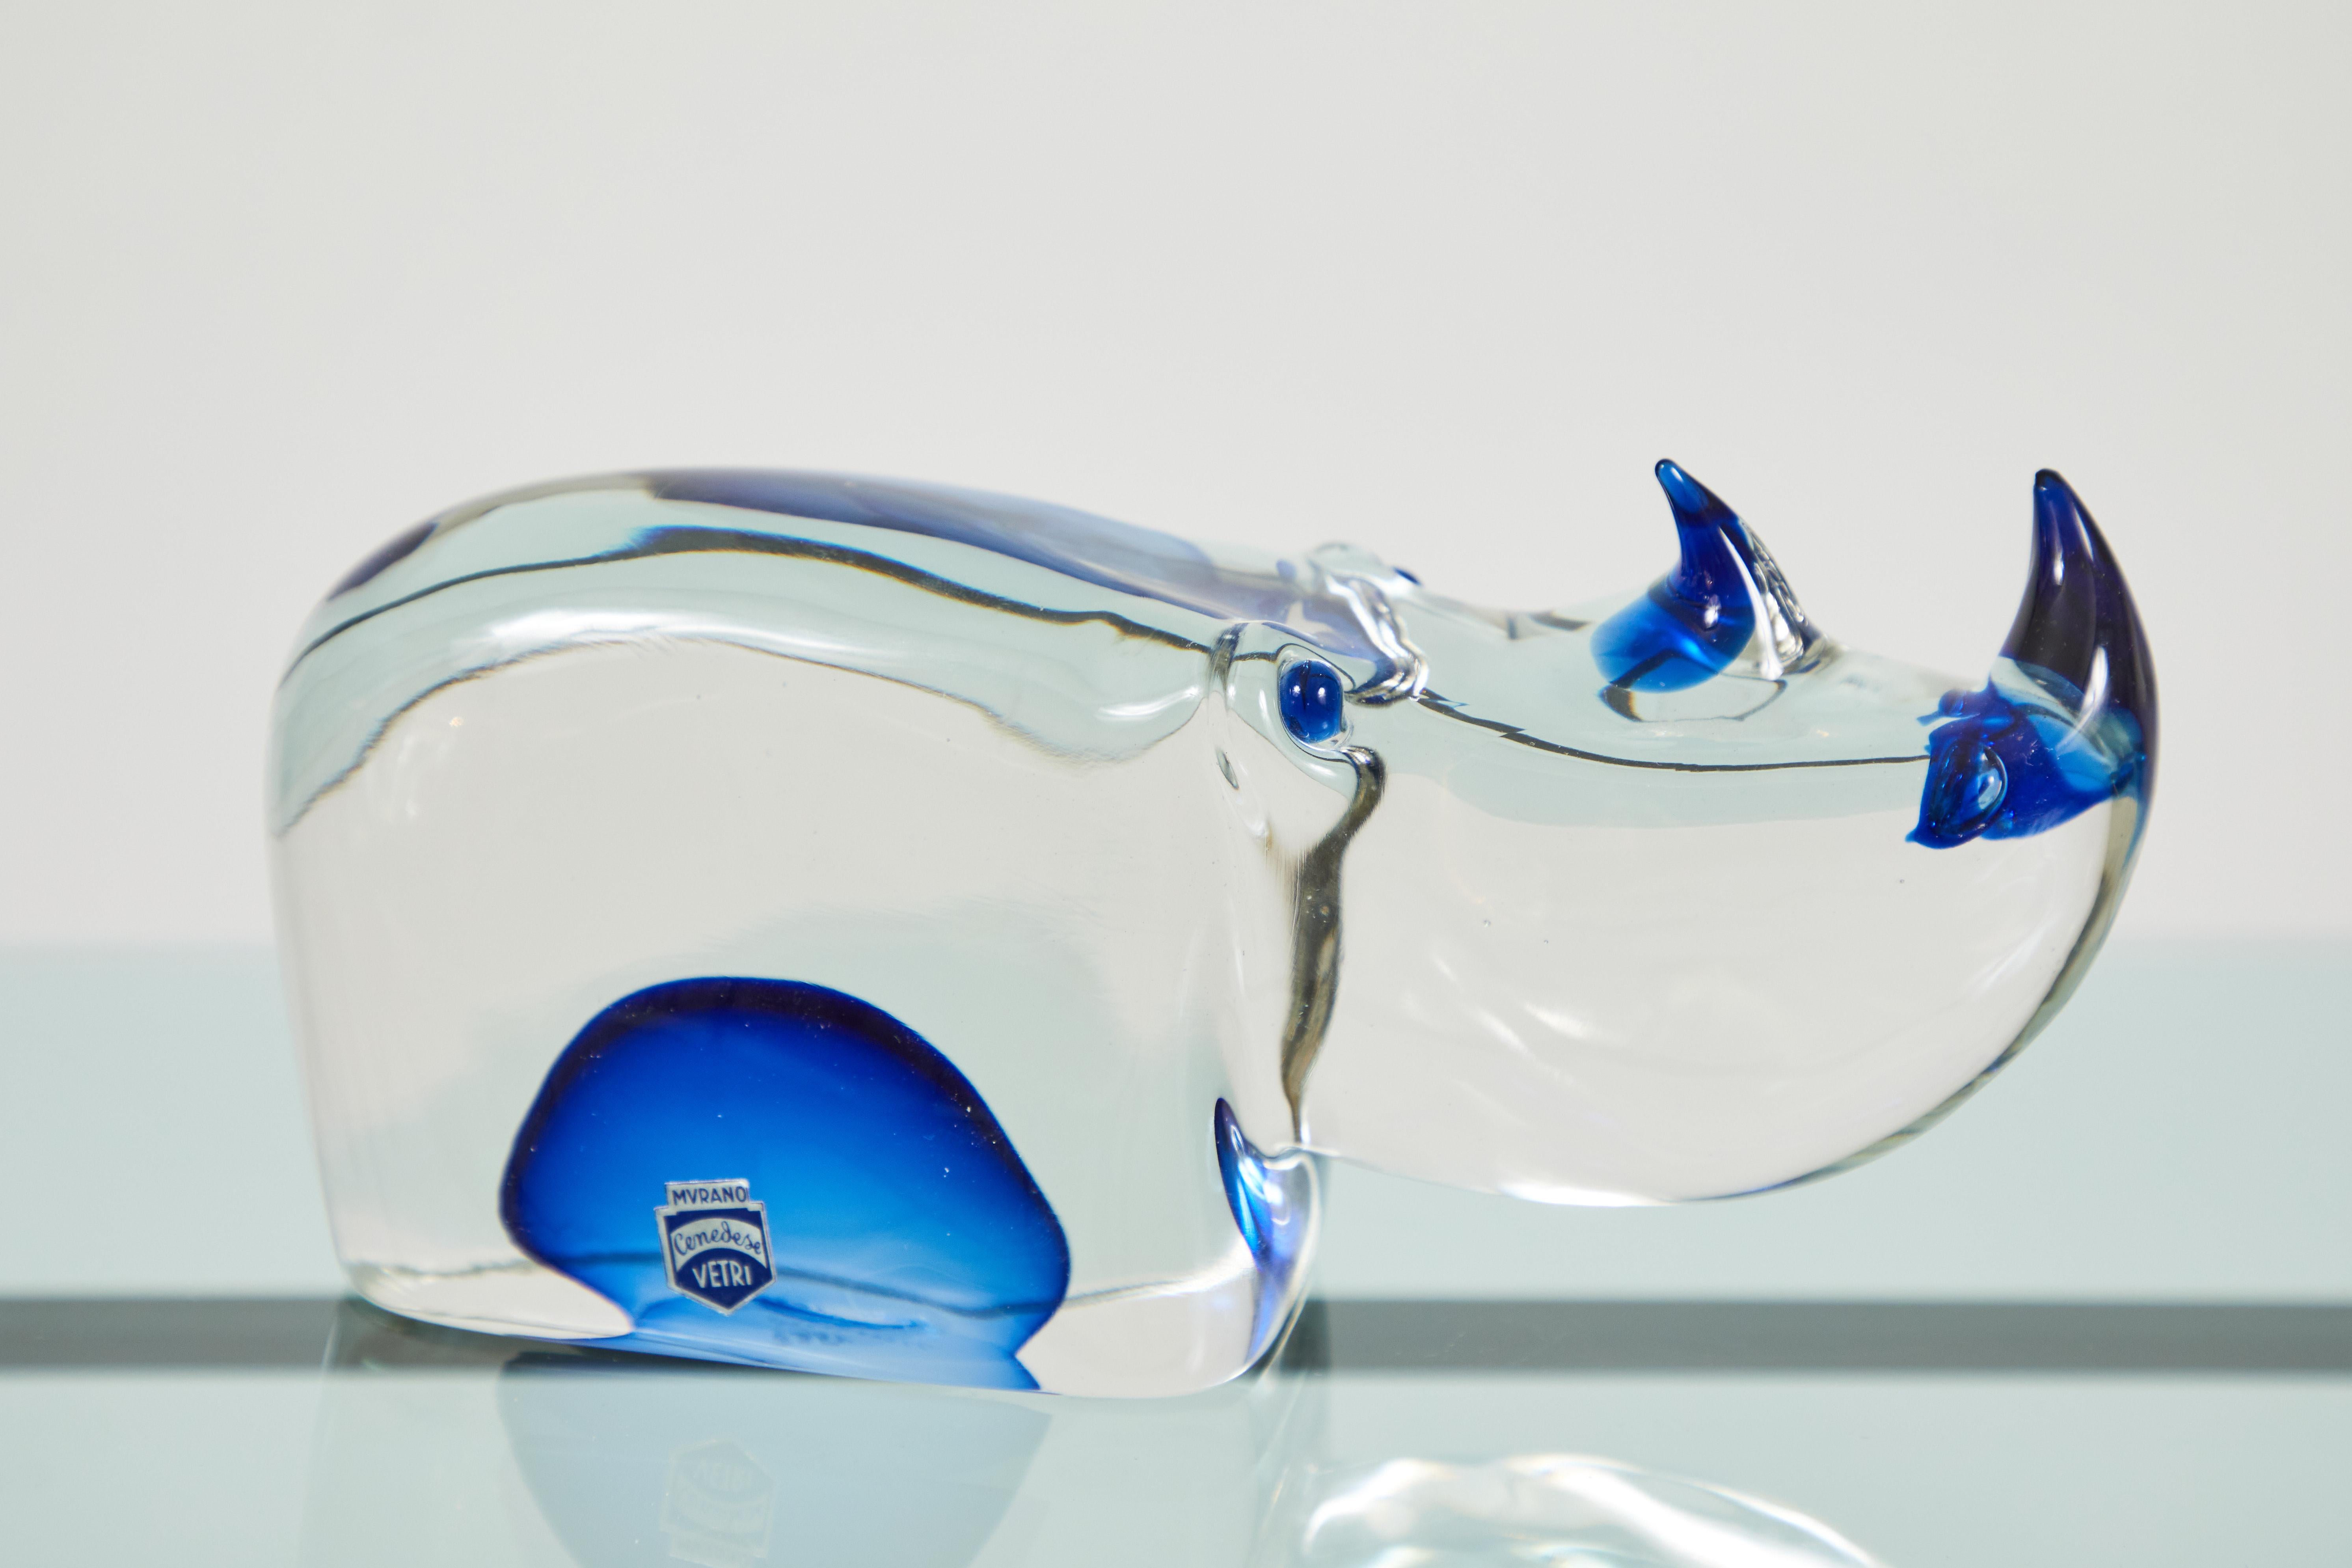 Se trata de un rinoceronte de cristal de Murano somerso y bellamente soplado. Esta pieza fue diseñada por Antonio da Ros y soplada por Fabio Tosi para Cenedese Vetri. Los cuernos, los orificios nasales, los ojos y el vientre presentan un vidrio